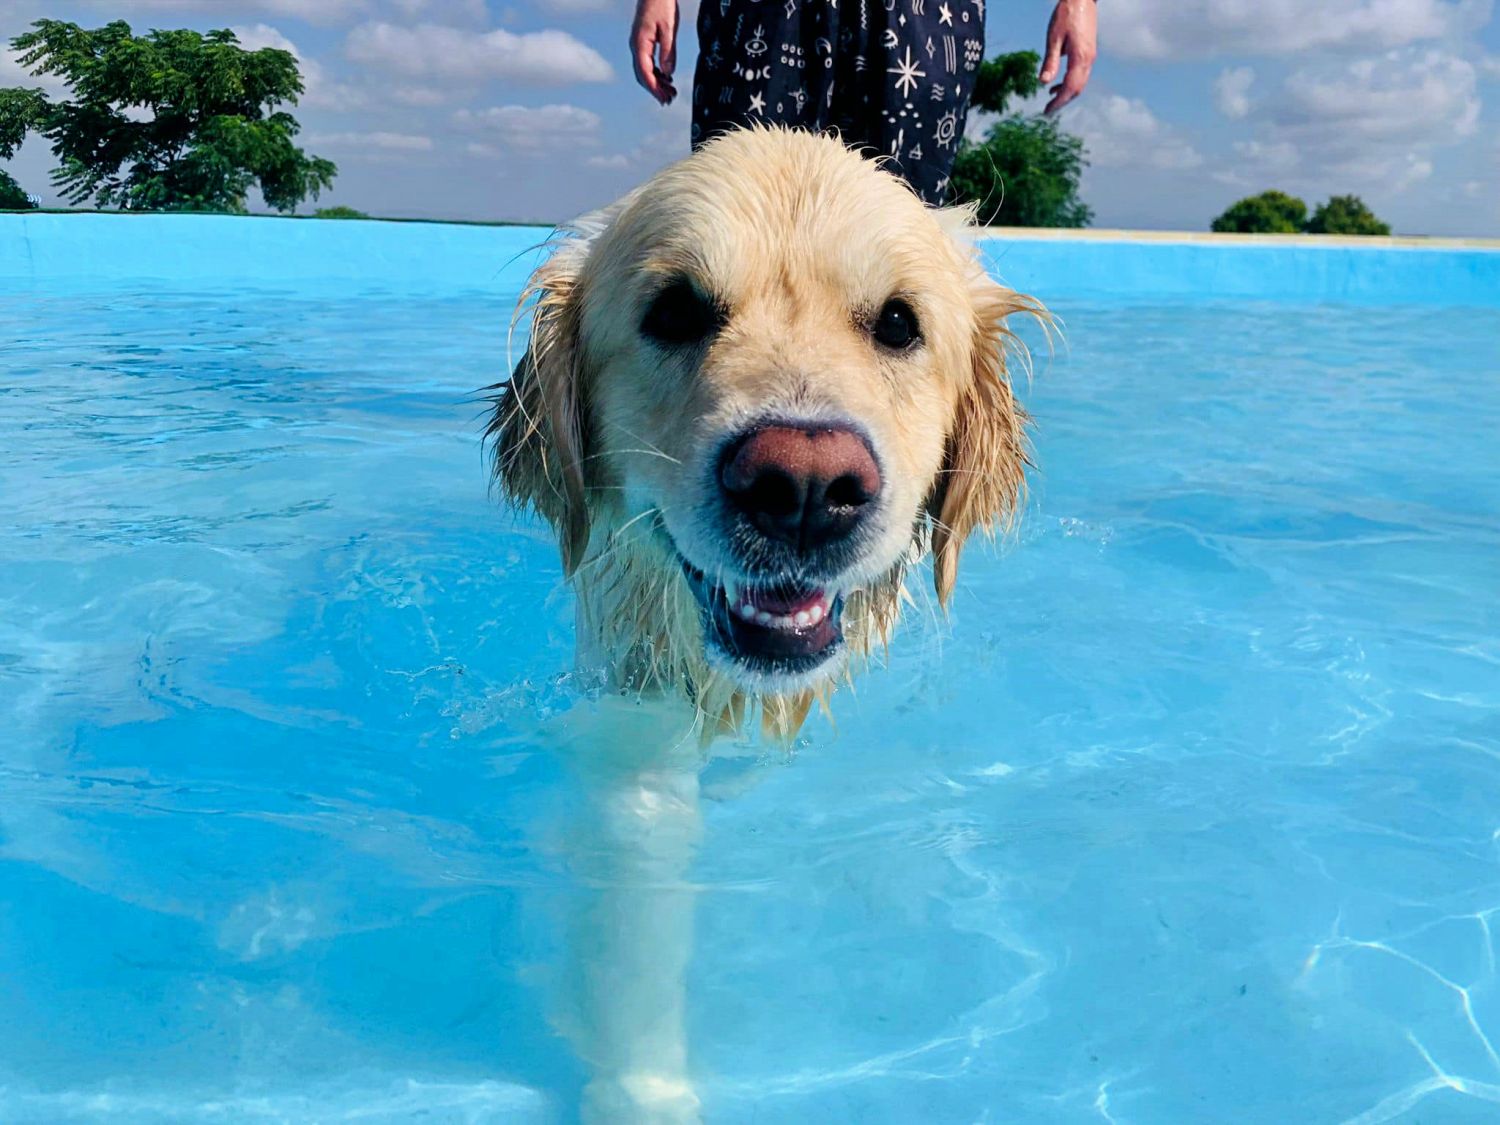 Having fun at Worldog: Aquapark Canino